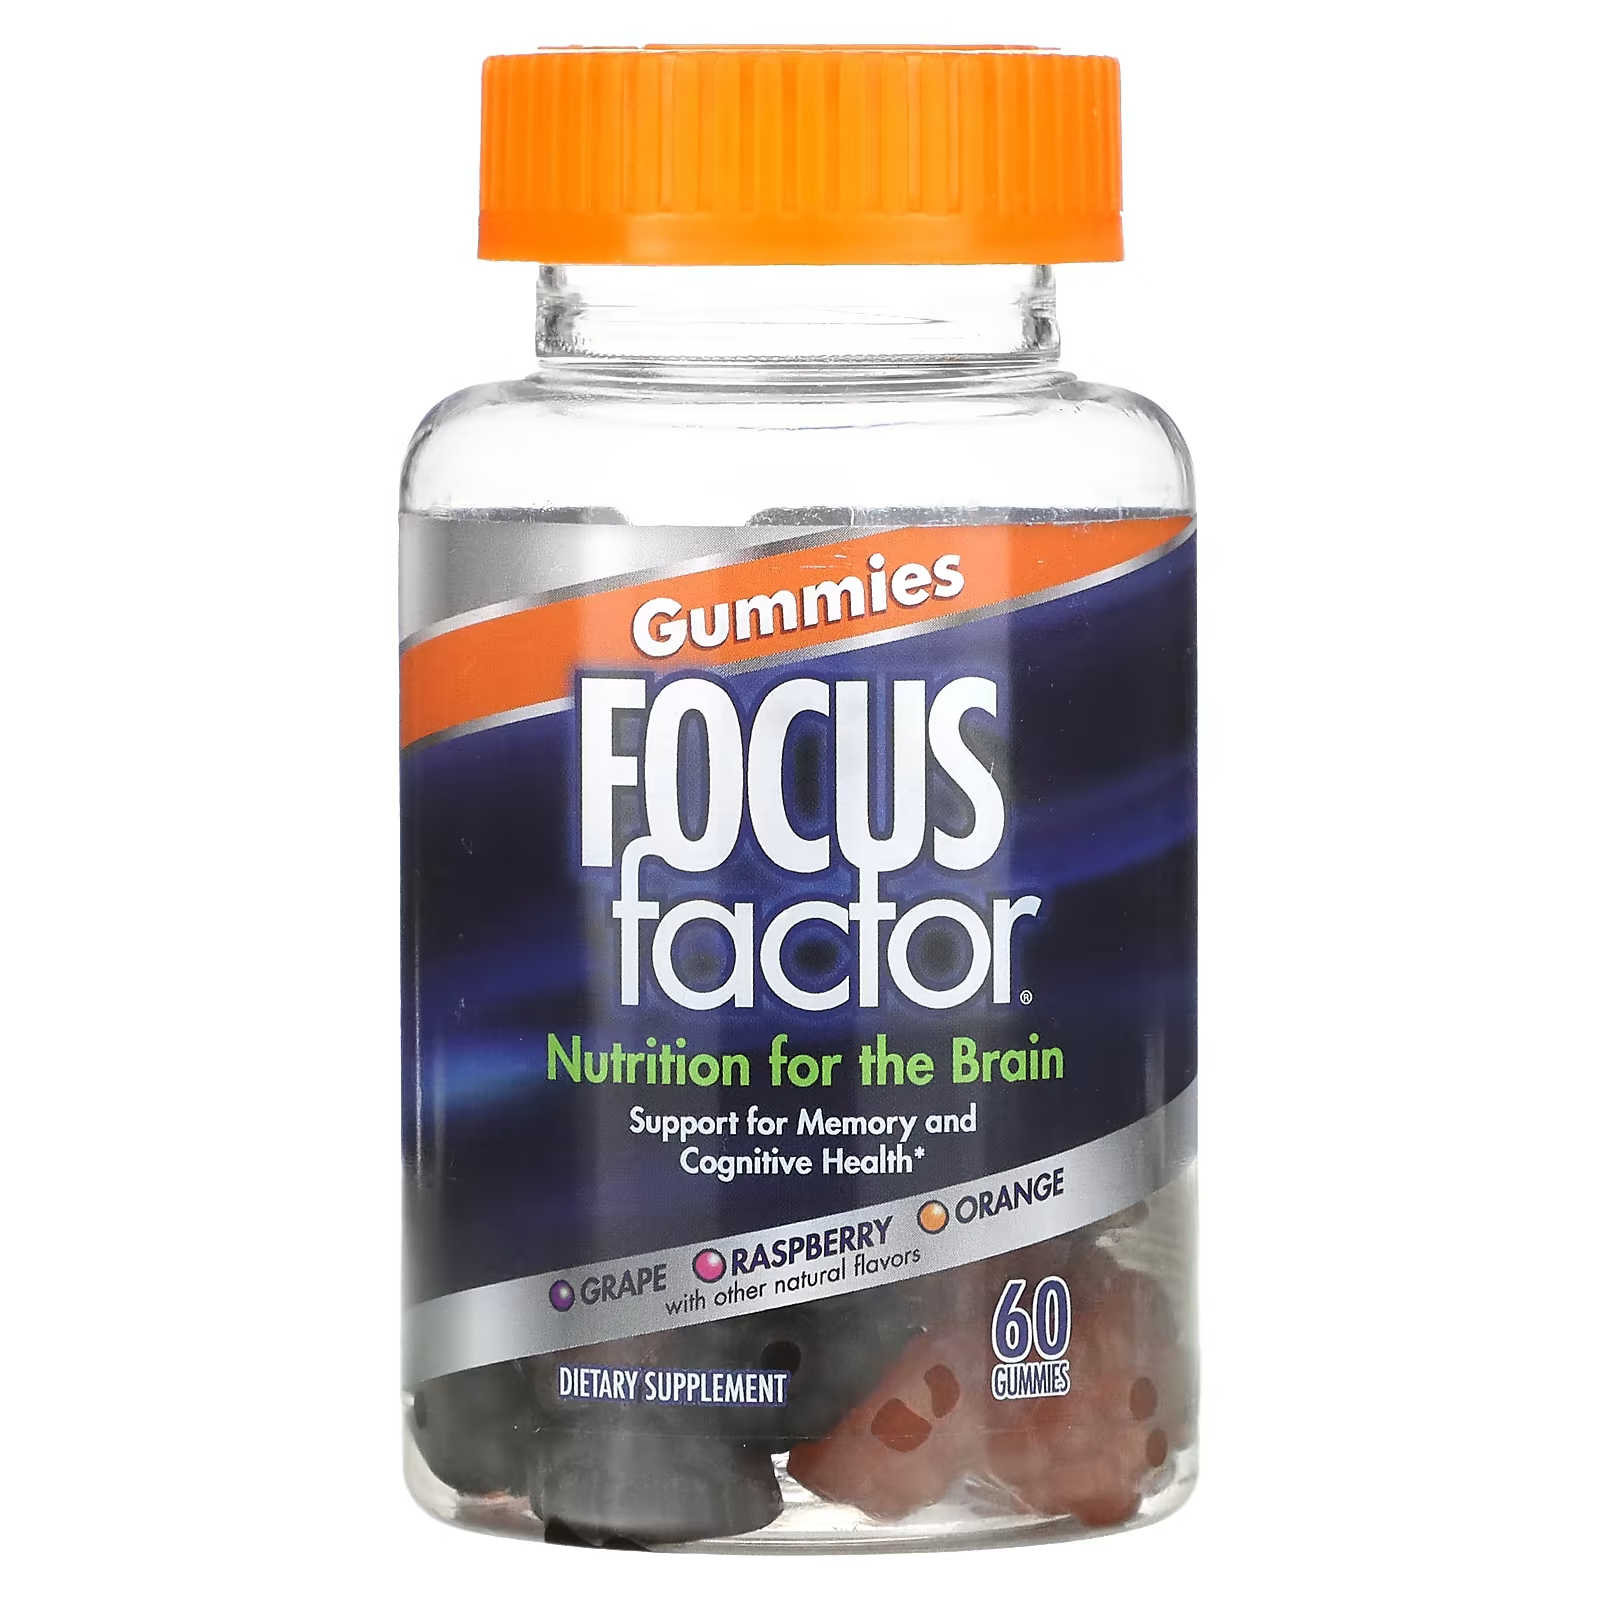 Пищевая добавка Focus Factor Nutrition For The Brain виноград, малина, апельсин, 60 жевательных таблеток добавка focus factor для оптимальной работы мозга виноград малина апельсин 60 жевательных таблеток